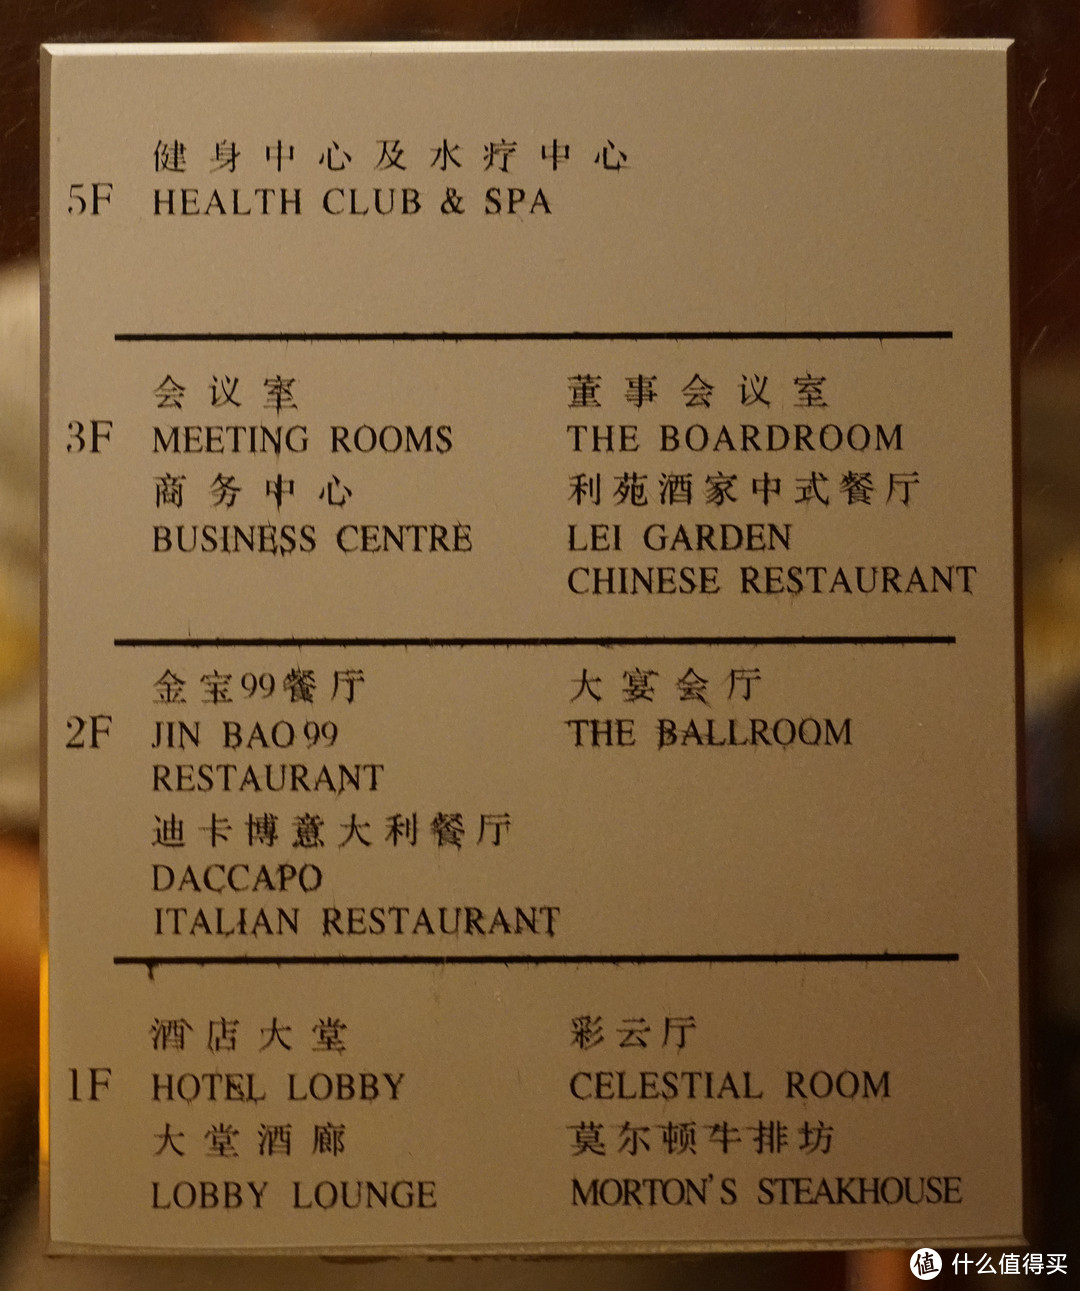 低调奢华 - 北京丽晶酒店 Regent BeiJing 行政房体验——第12期试吃试睡报告